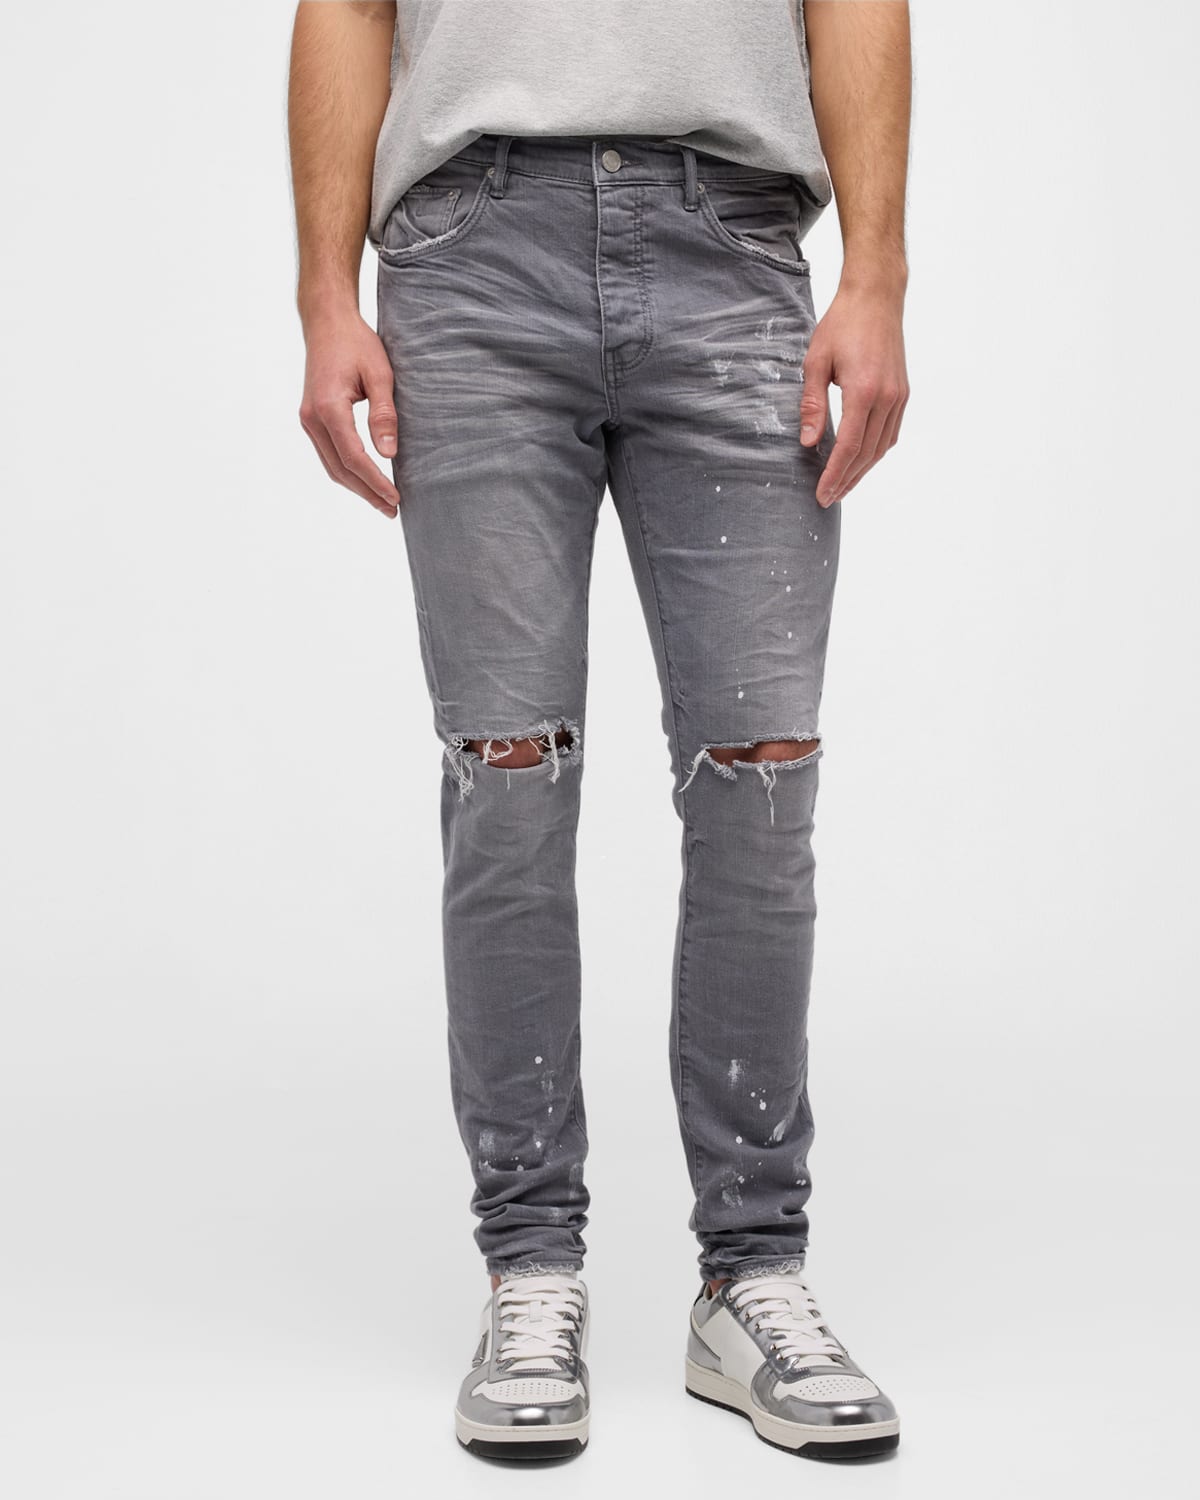 Men's Paint-Splatter Skinny Jeans, Knee Slits